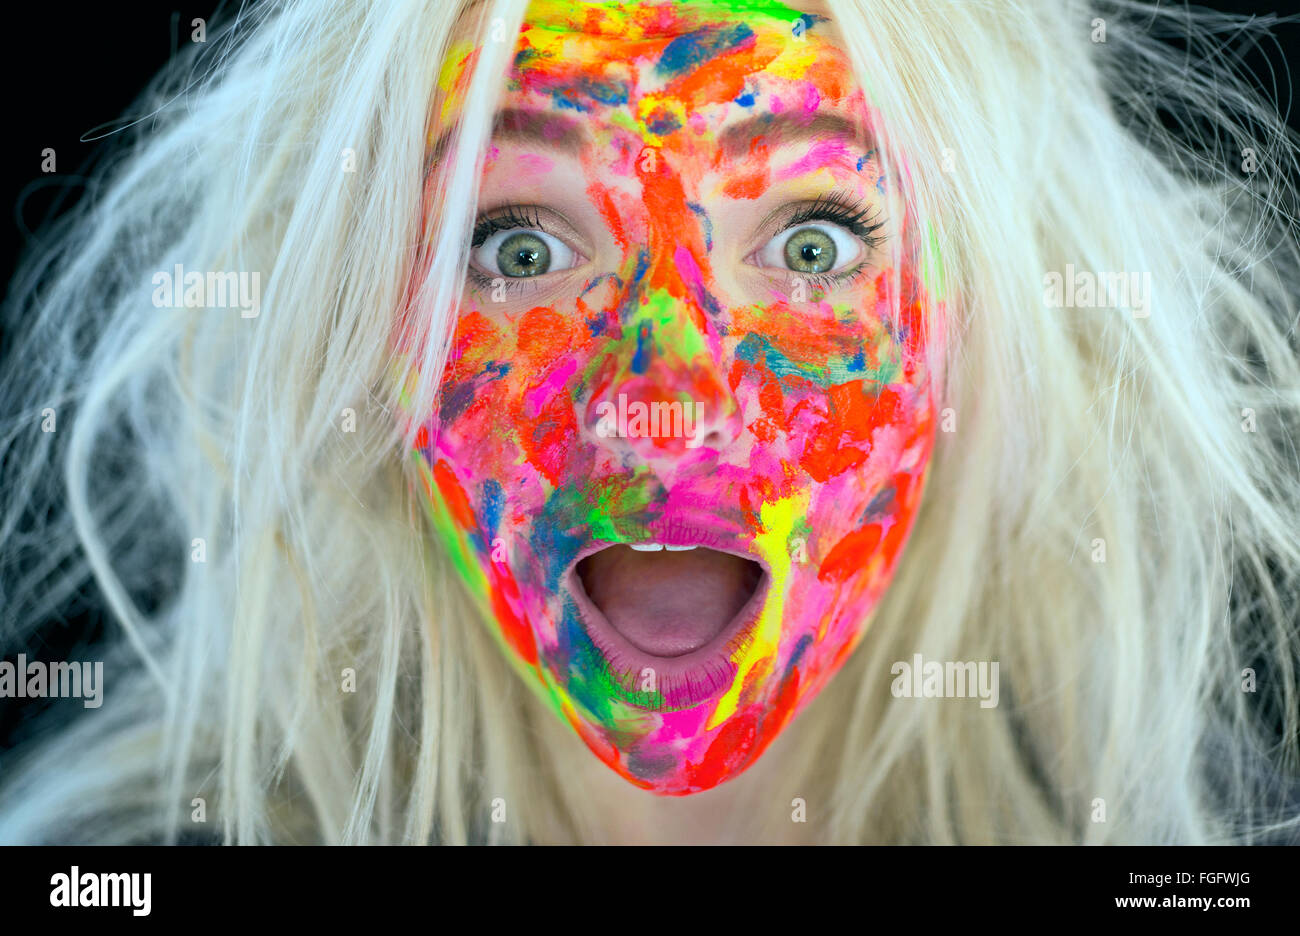 Mujer con cabello rubio desordenado y el rostro cubierto de pintura multicolor con una expresión de sorpresa Foto de stock